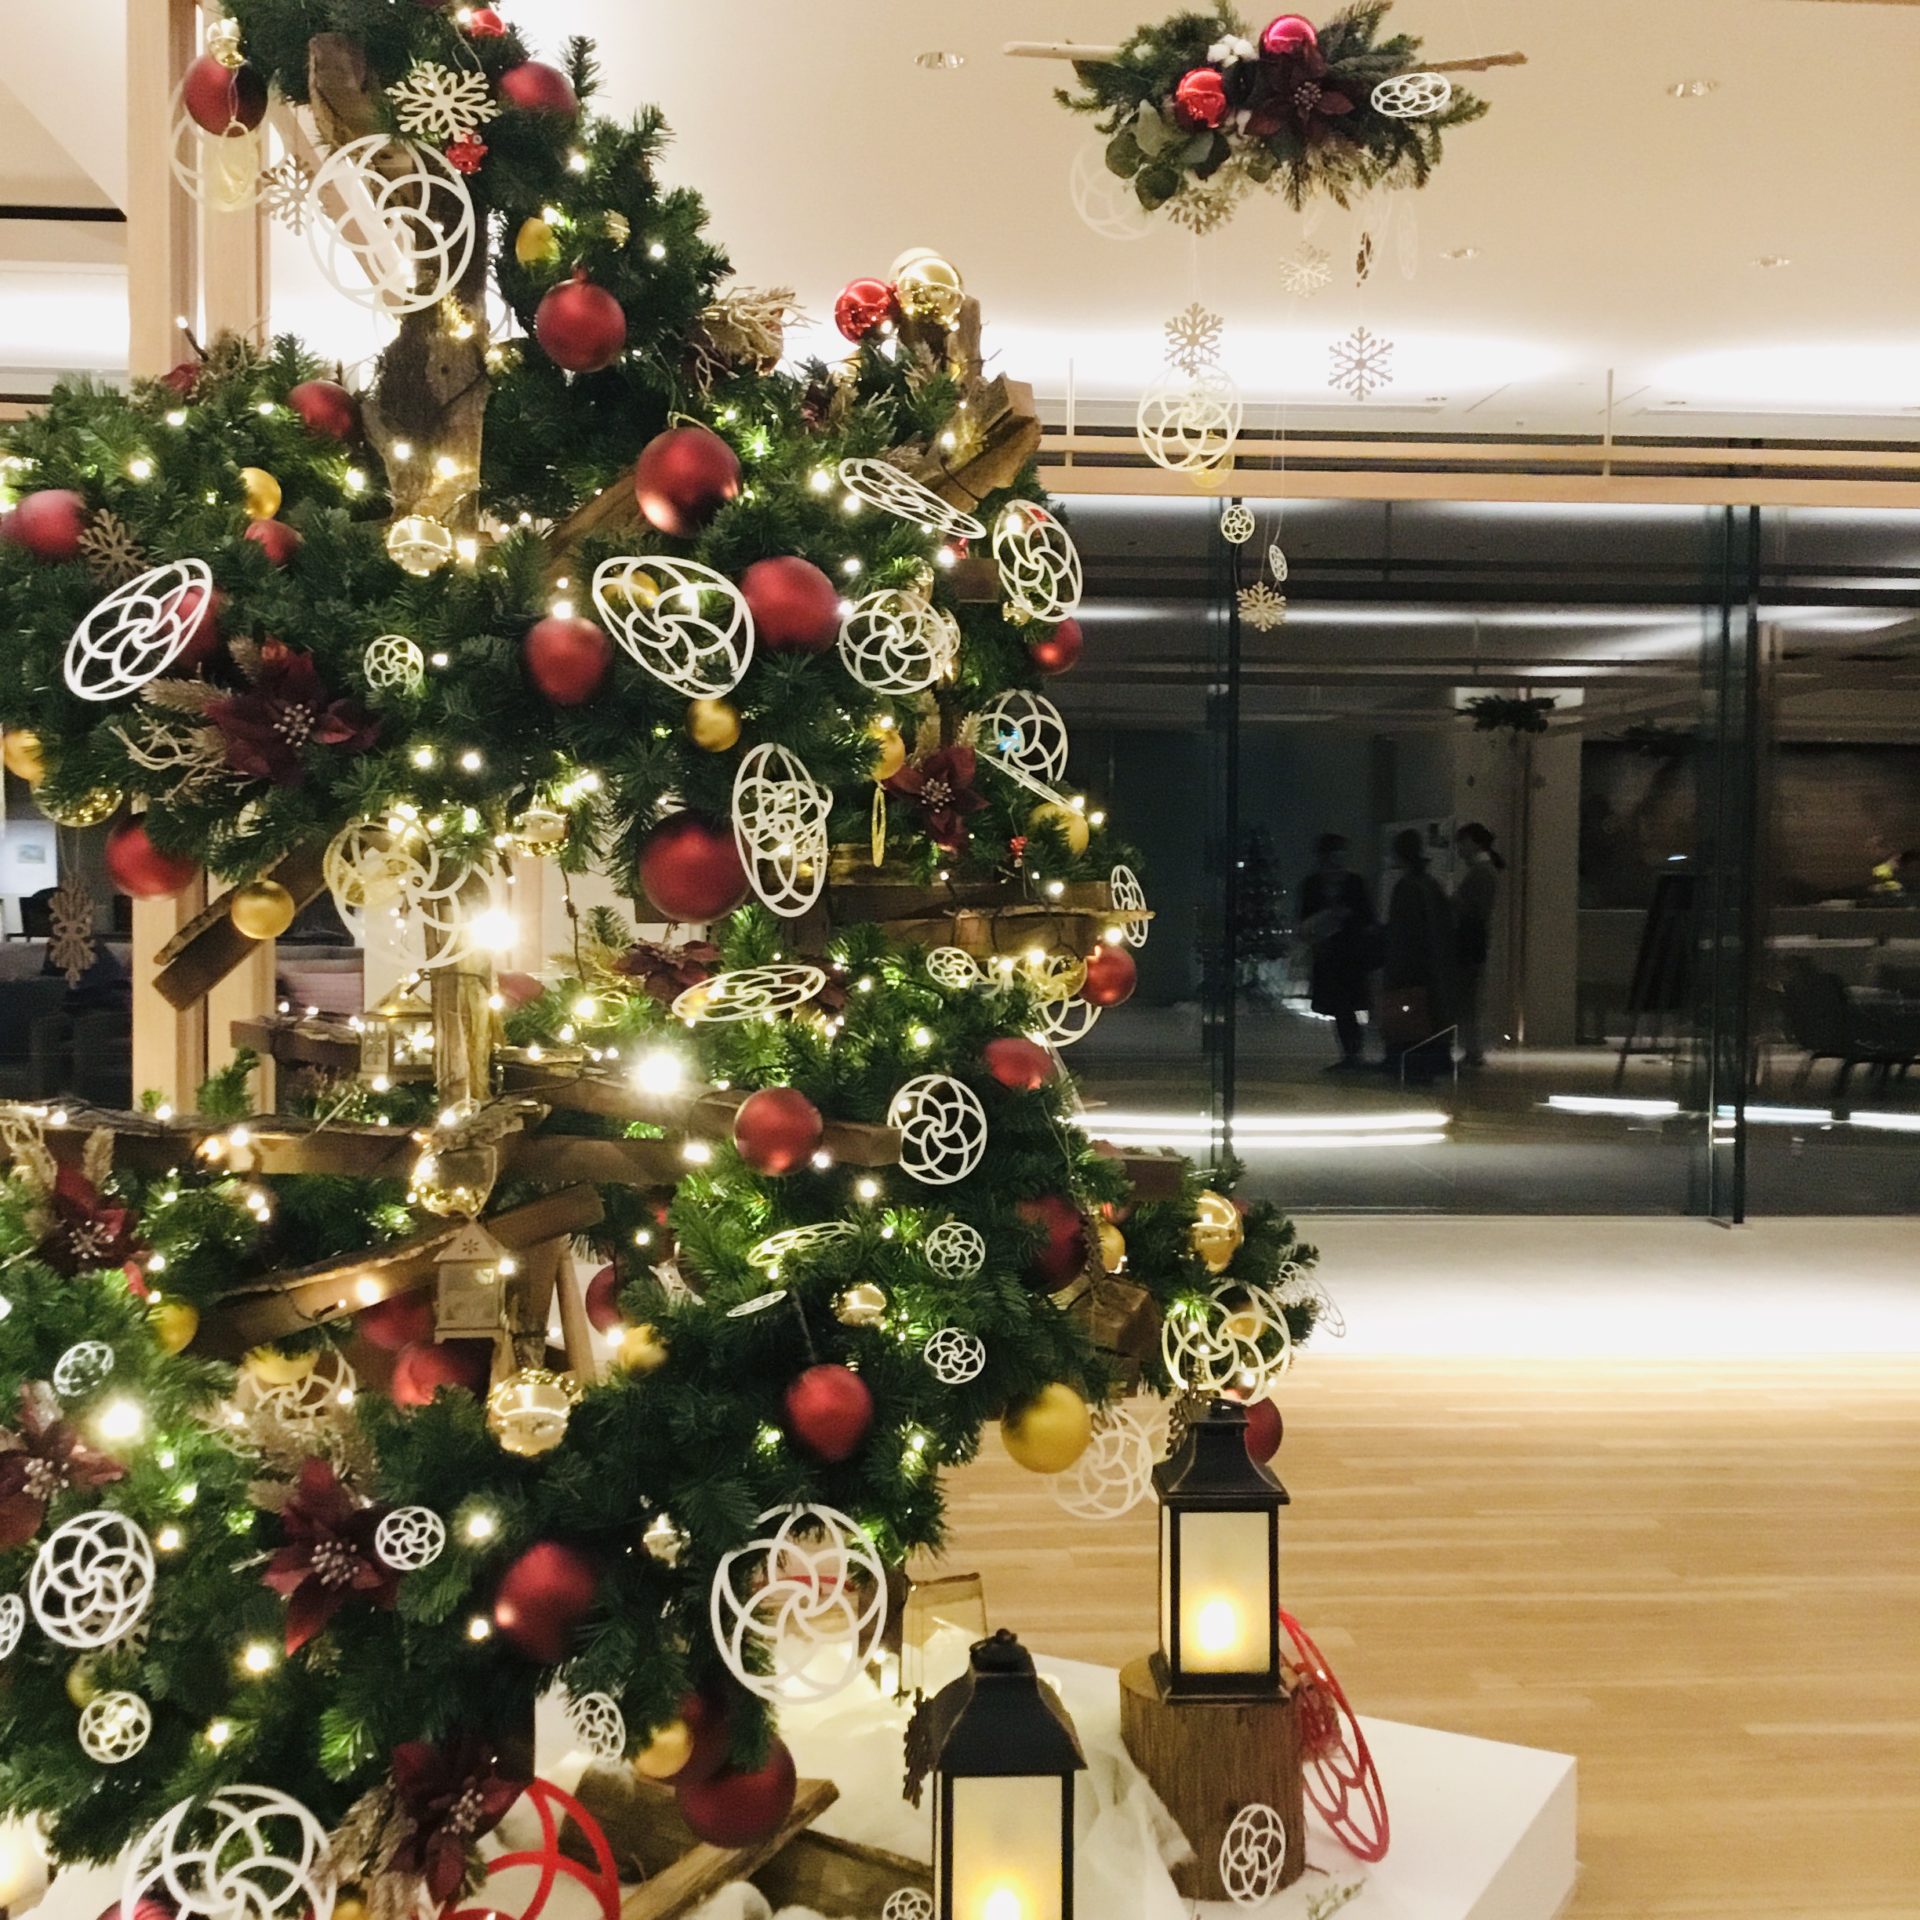 はなをりにクリスマスツリーが登場しました Staff Blog 新着情報 観光 イベント情報 箱根 芦ノ湖のホテル 旅館なら 箱根 芦ノ湖 はなをり 公式